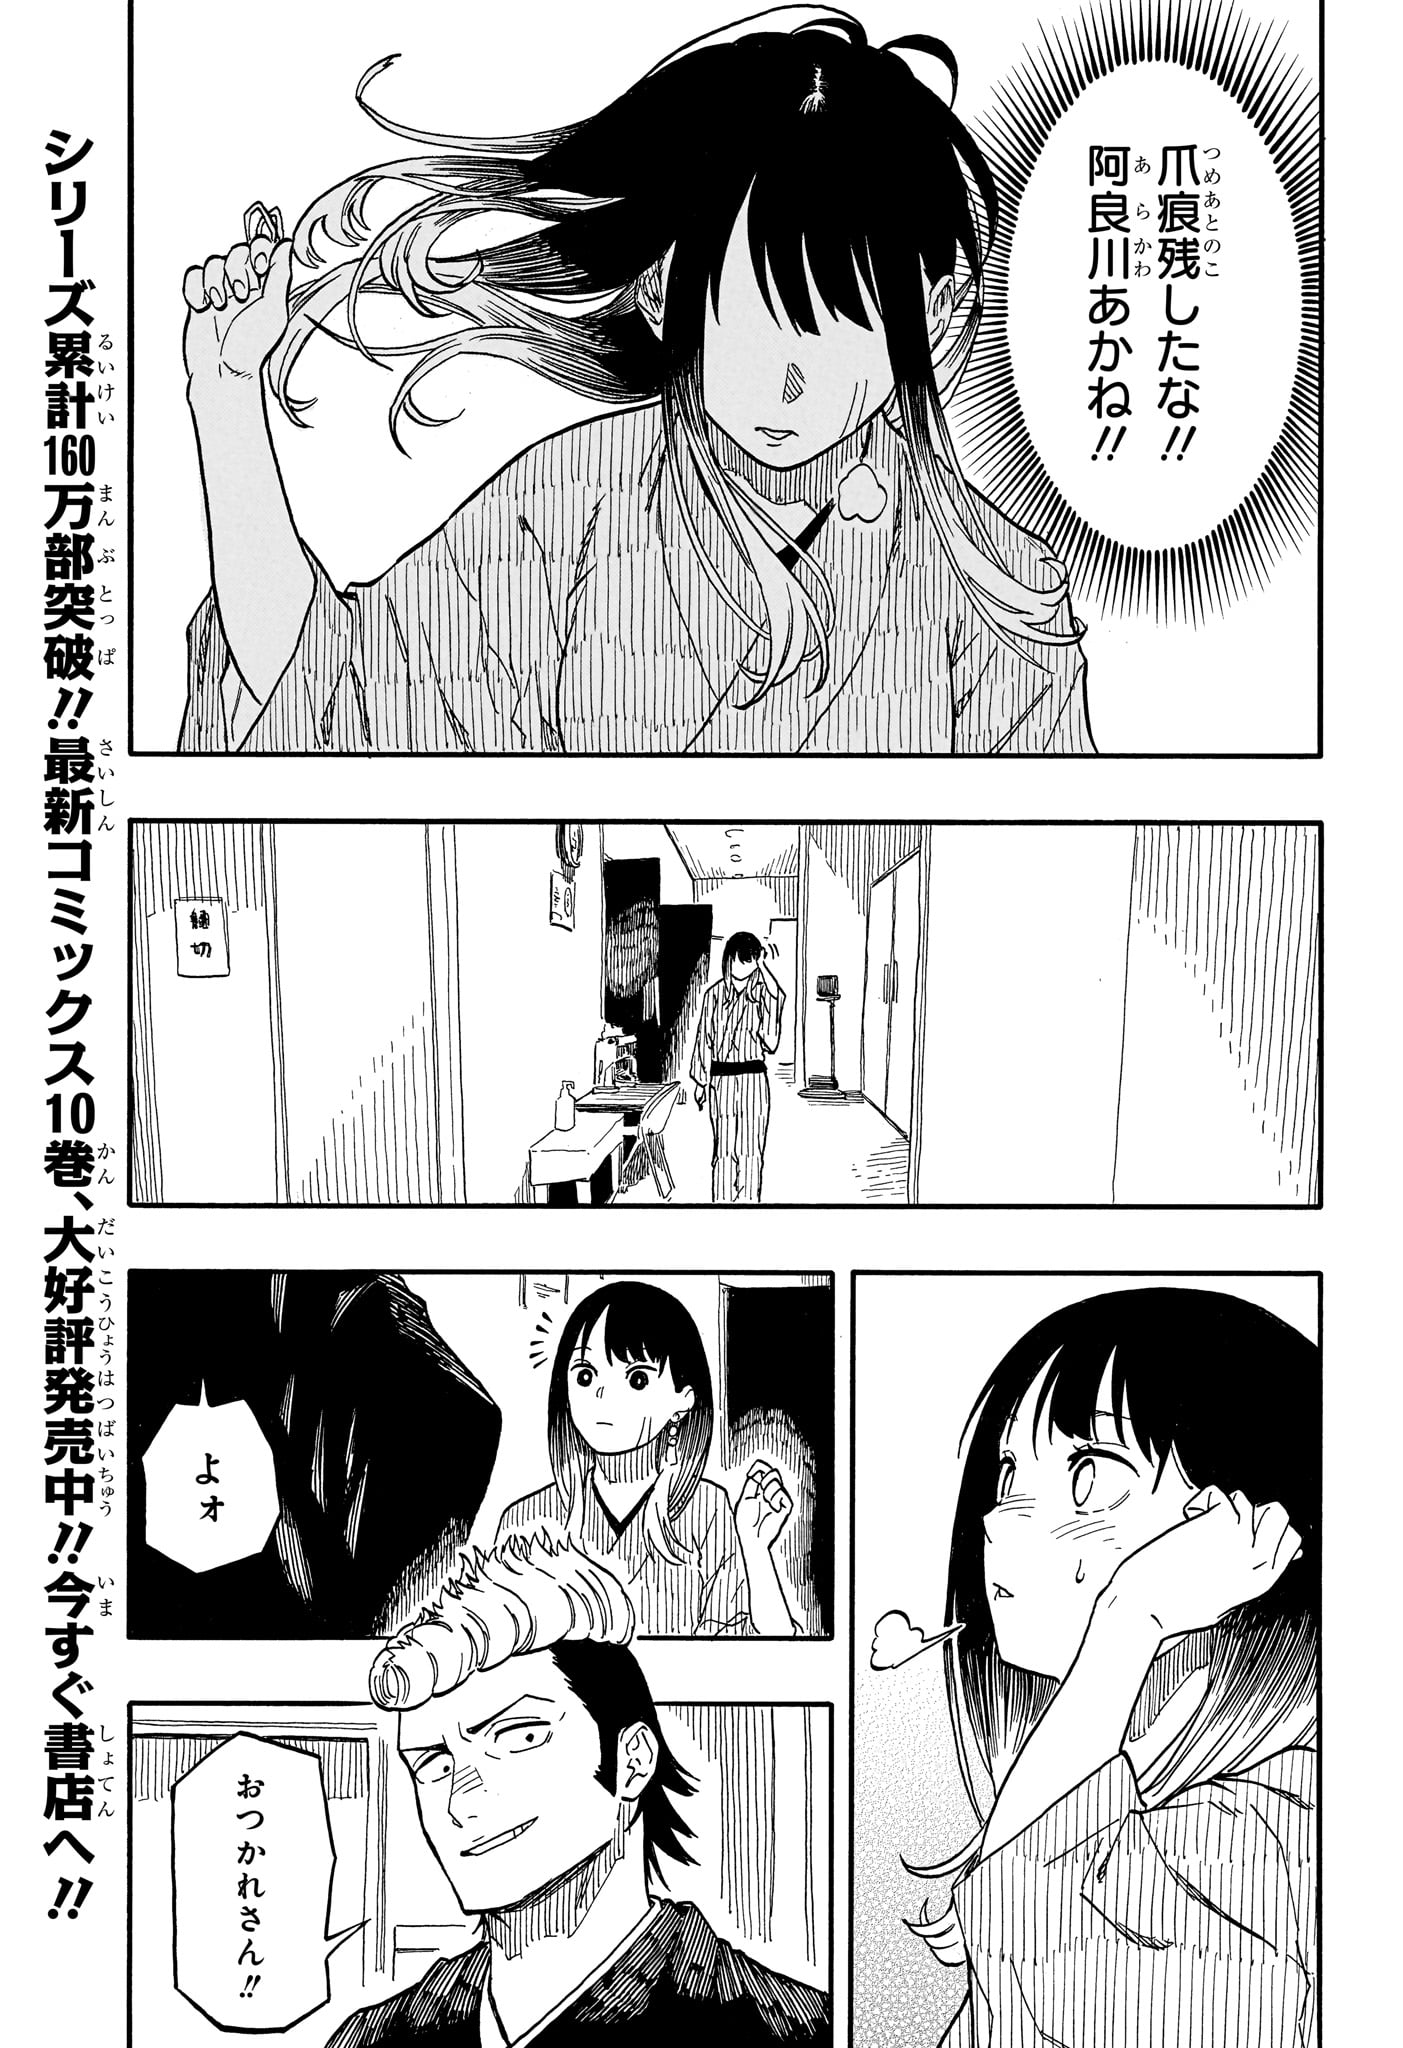 Akane-Banashi - Chapter 102 - Page 3